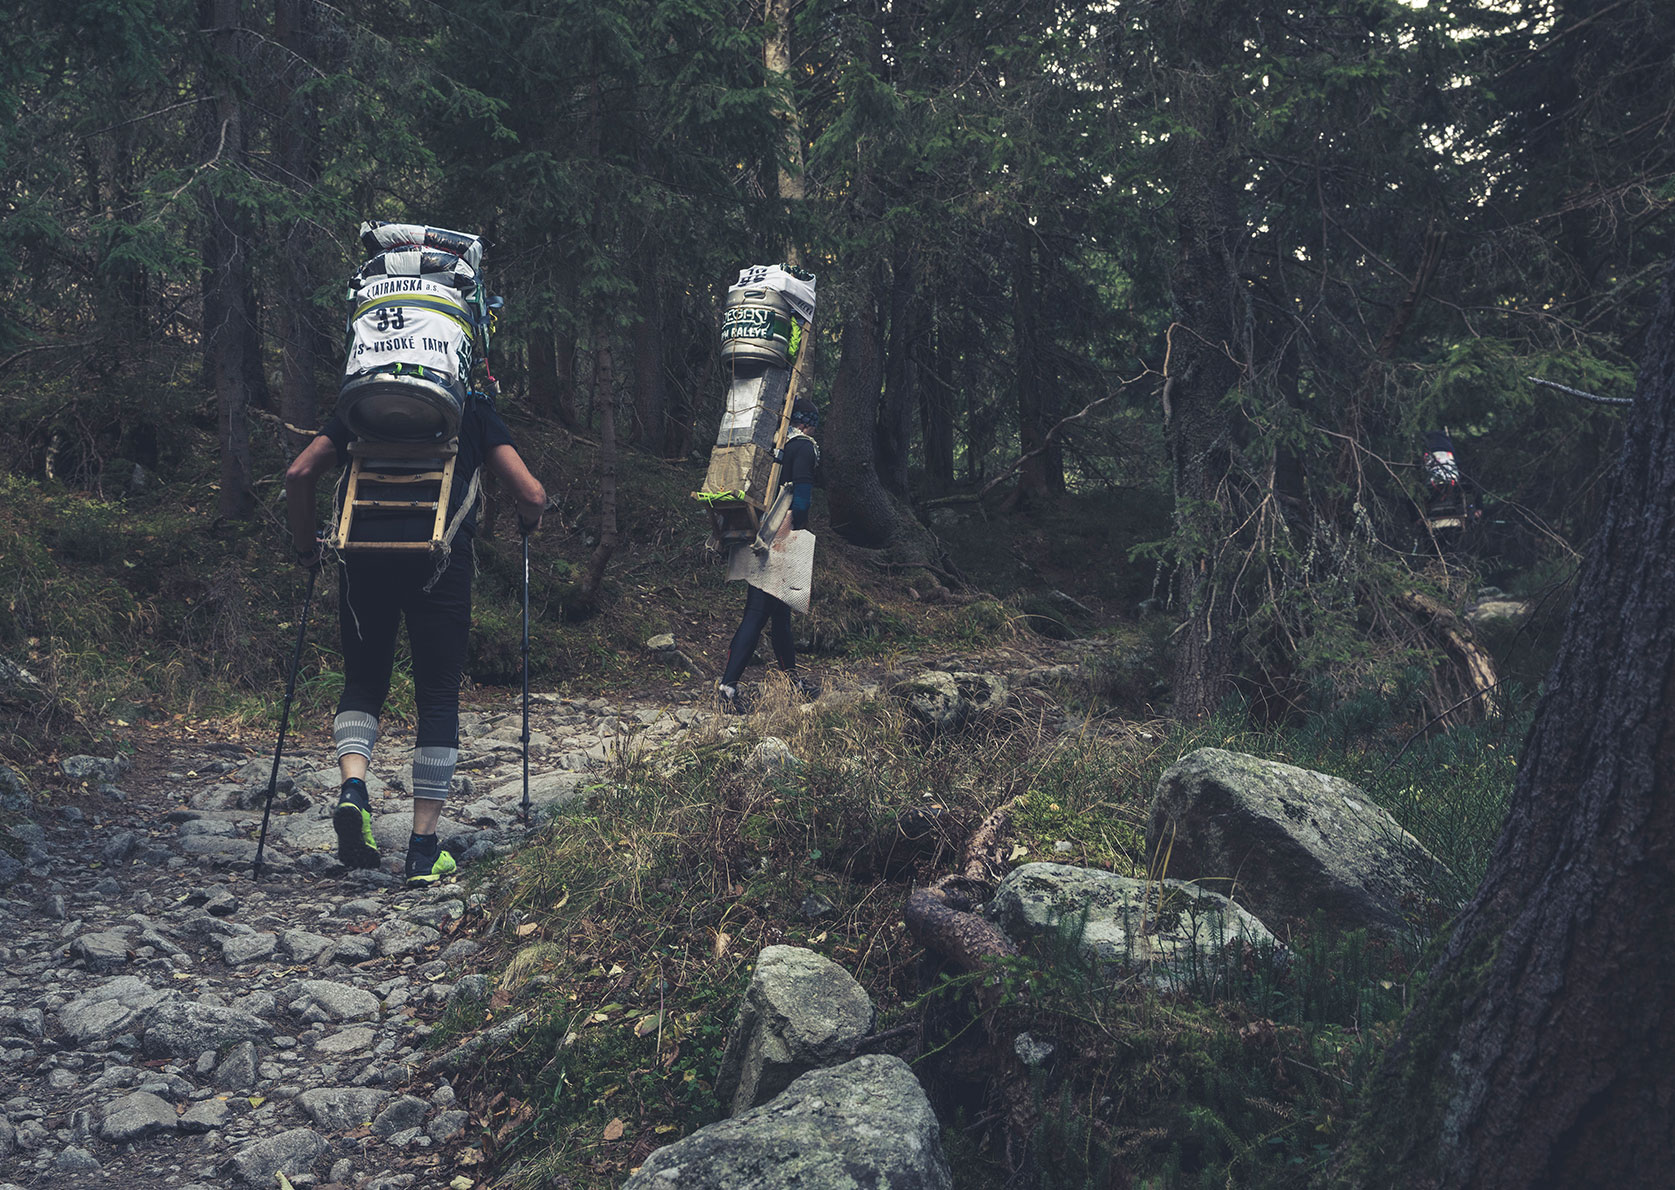 Zwei Teilnehmer der Tatra Sherpa Rallye tragen ihre beladenen Kraxen durch einen Wald